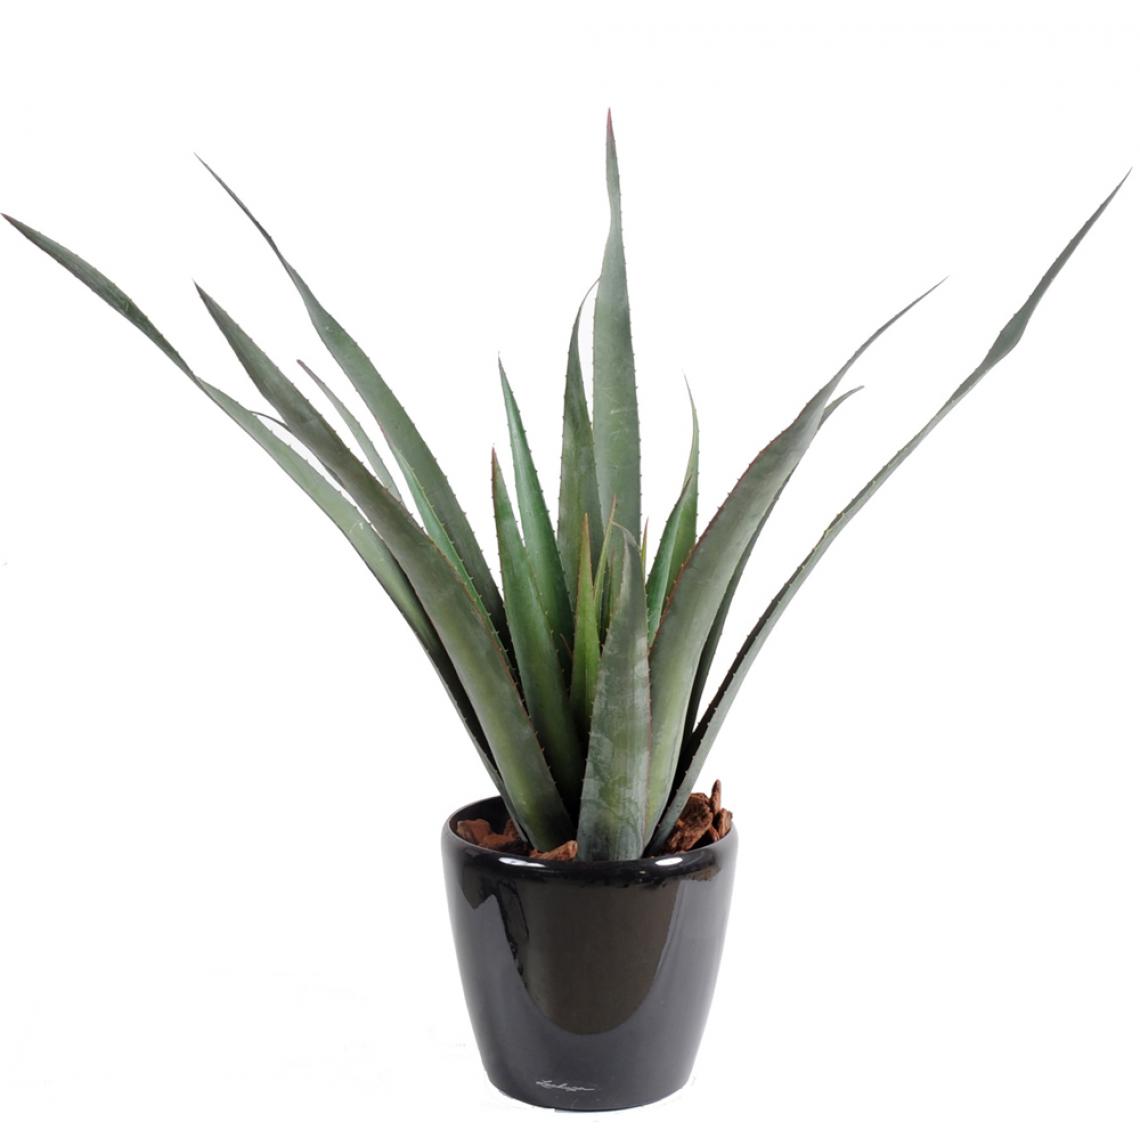 Pegane - Plante artificielle haute gamme Spécial extérieur / Aloe artificielle ferox - Dim : 65 x 60 cm - Plantes et fleurs artificielles